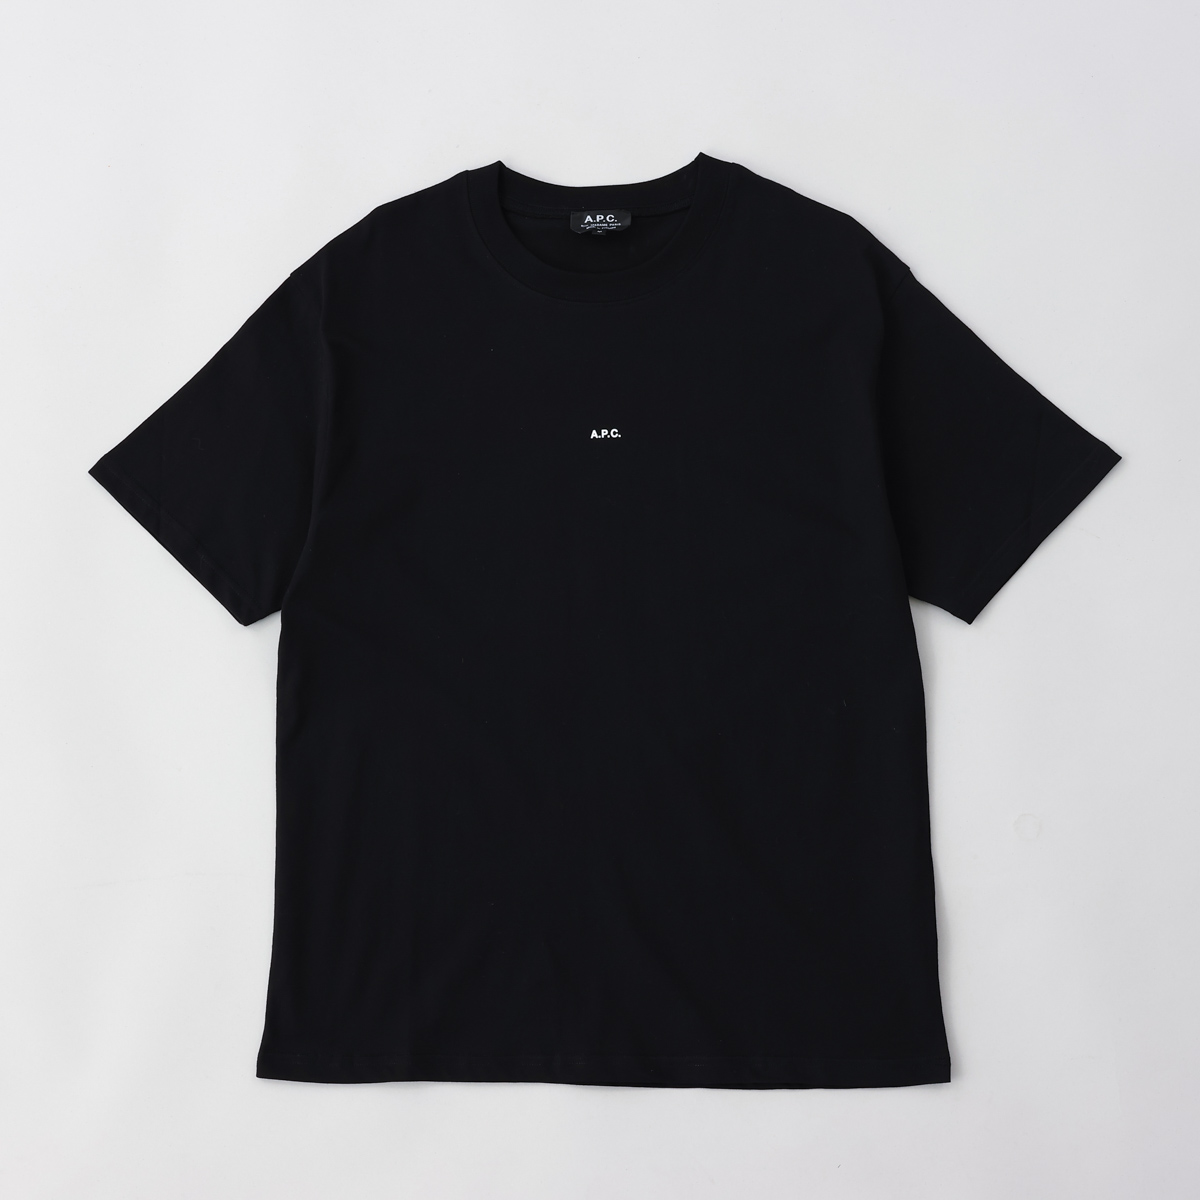 アーペーセー A.P.C. メンズTシャツ Tシャツ コットン ロゴ クルーネック ブラック H26929 COEIO LZZ T-SHIRT  KYLE BLACK メンズ